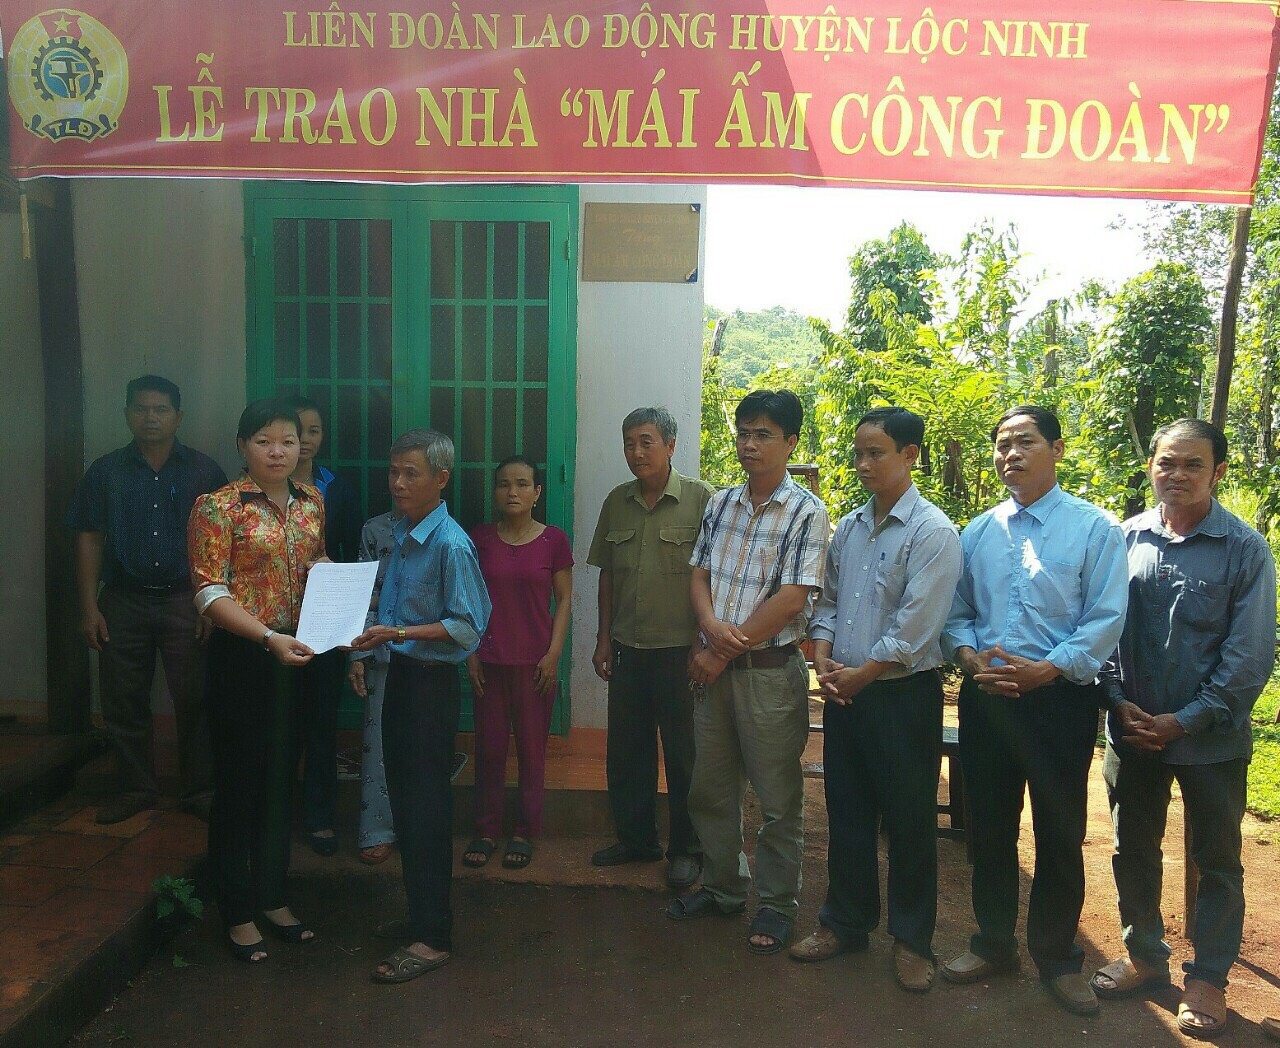 Liên đoàn lao động huyện Lộc Ninh  trao nhà Mái ấm Công đoàn cho CNVCLĐ có hoàn cảnh khó khăn về nhà ở